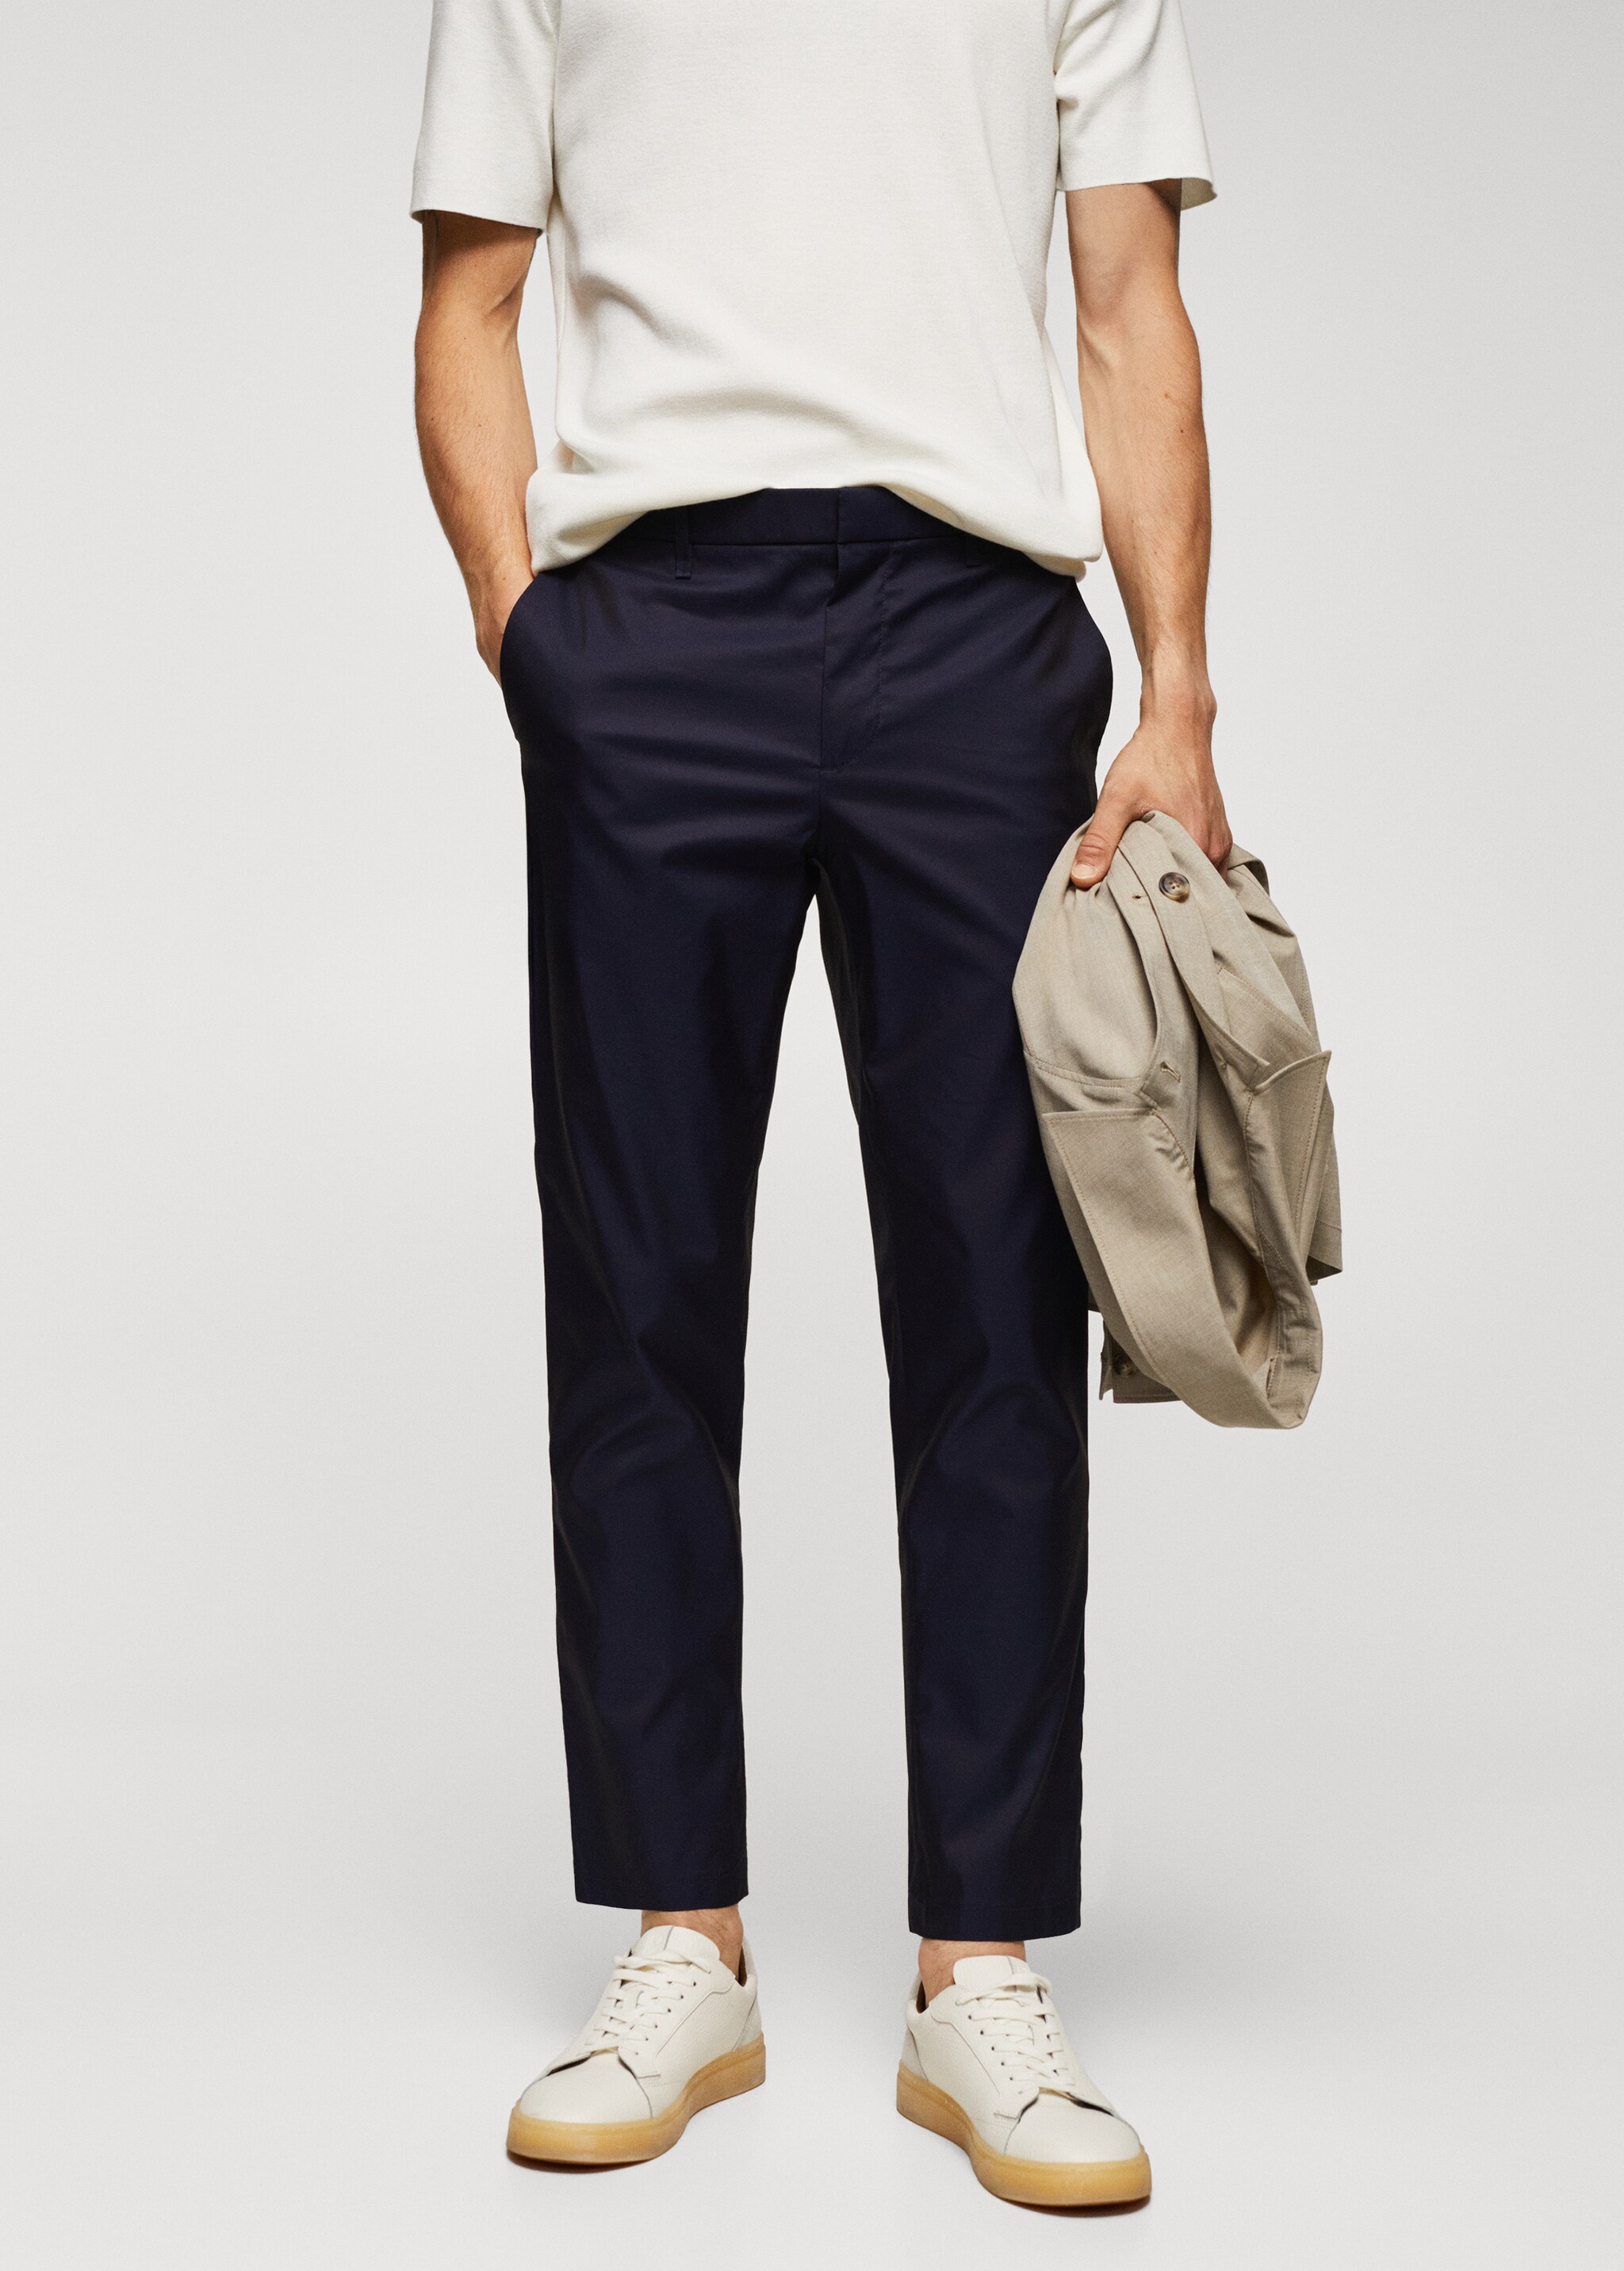 Pantalons slim fit cotó - Plano medio